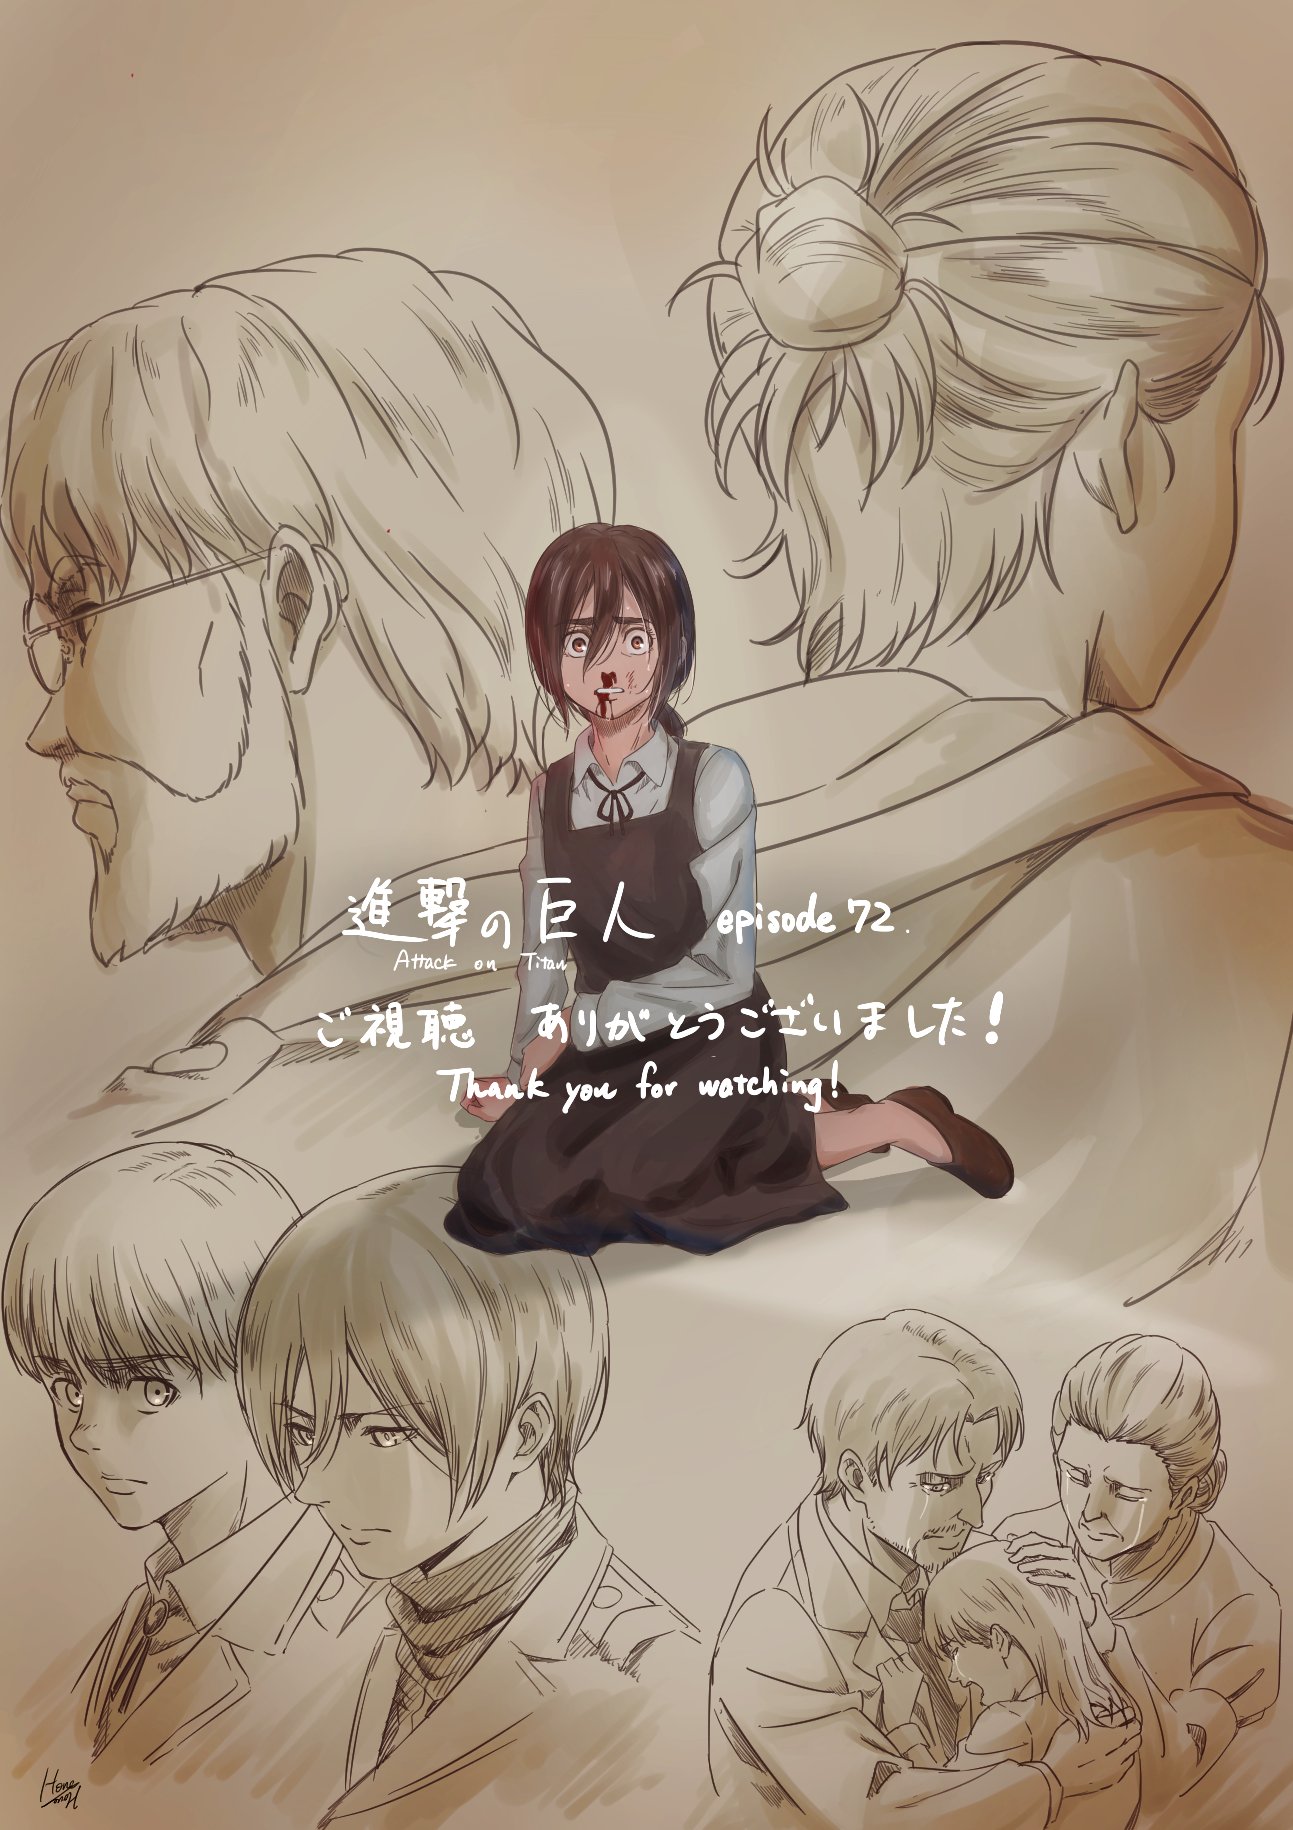 Anime de Attack on Titan celebra o lançamento do episódio 72 com uma ilustração especial de Gabi 